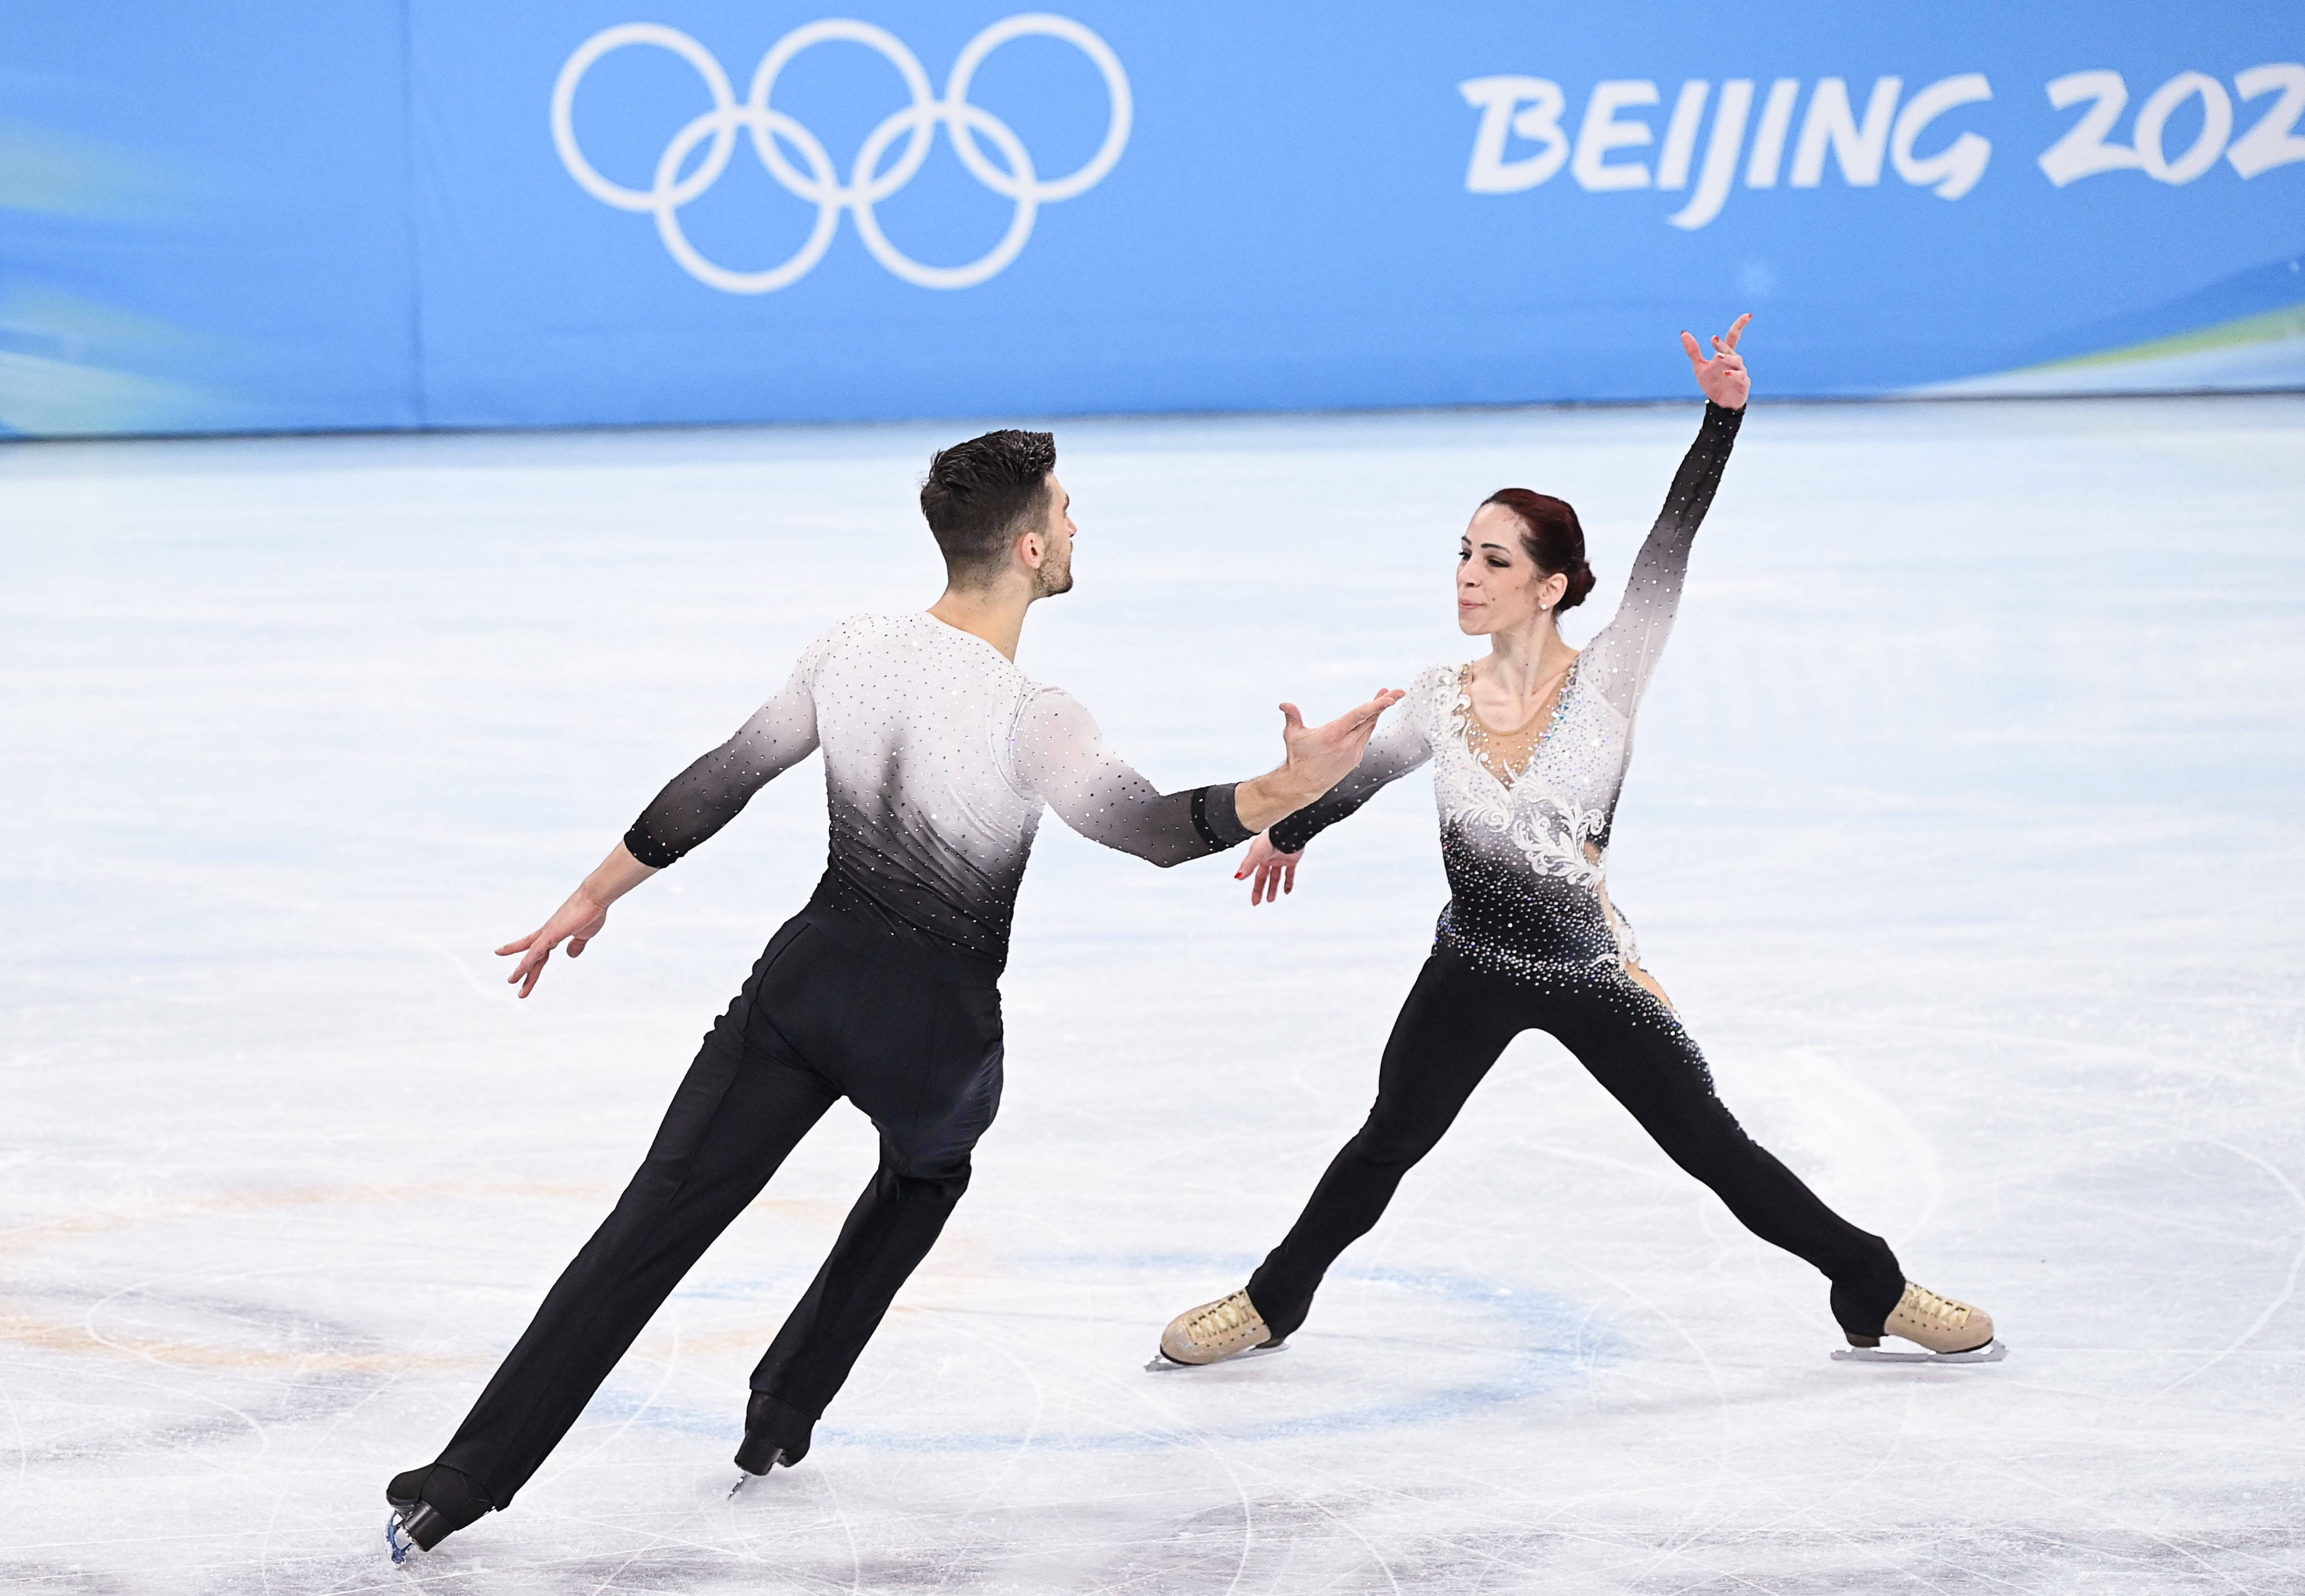 当日,北京2022年冬奥会花样滑冰双人滑自由滑比赛在首都体育馆举行.